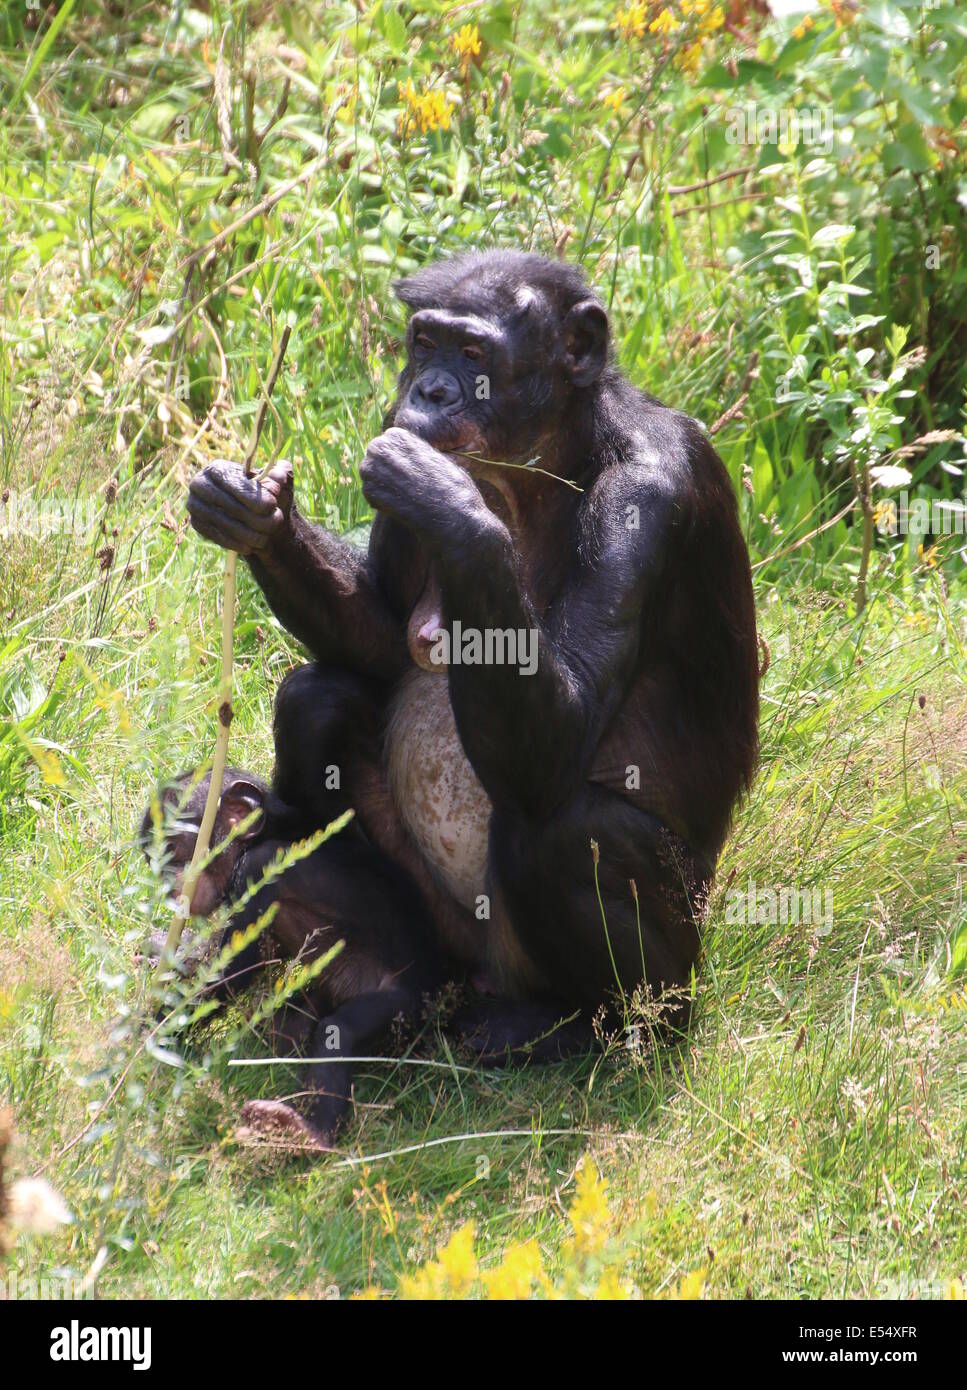 La madre y el niño (anteriormente) el bonobo o chimpancé pigmeo (Pan paniscus) en un entorno natural Foto de stock